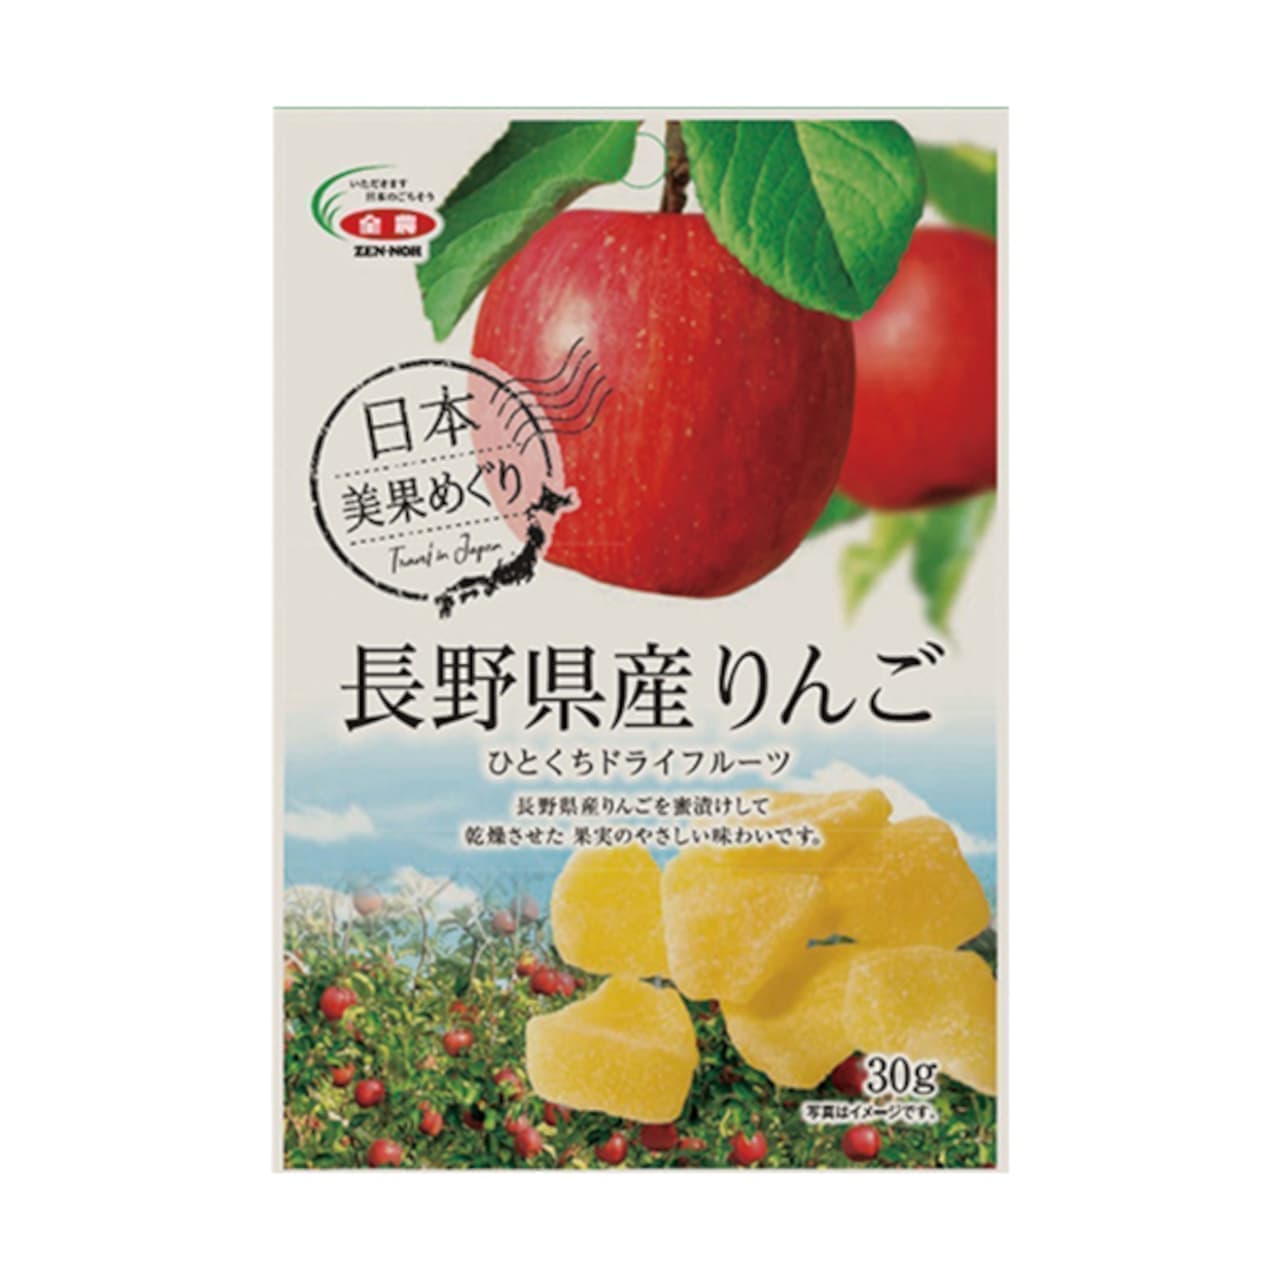 ファミマ「全農食品 長野県産りんごひとくちドライフルーツ」